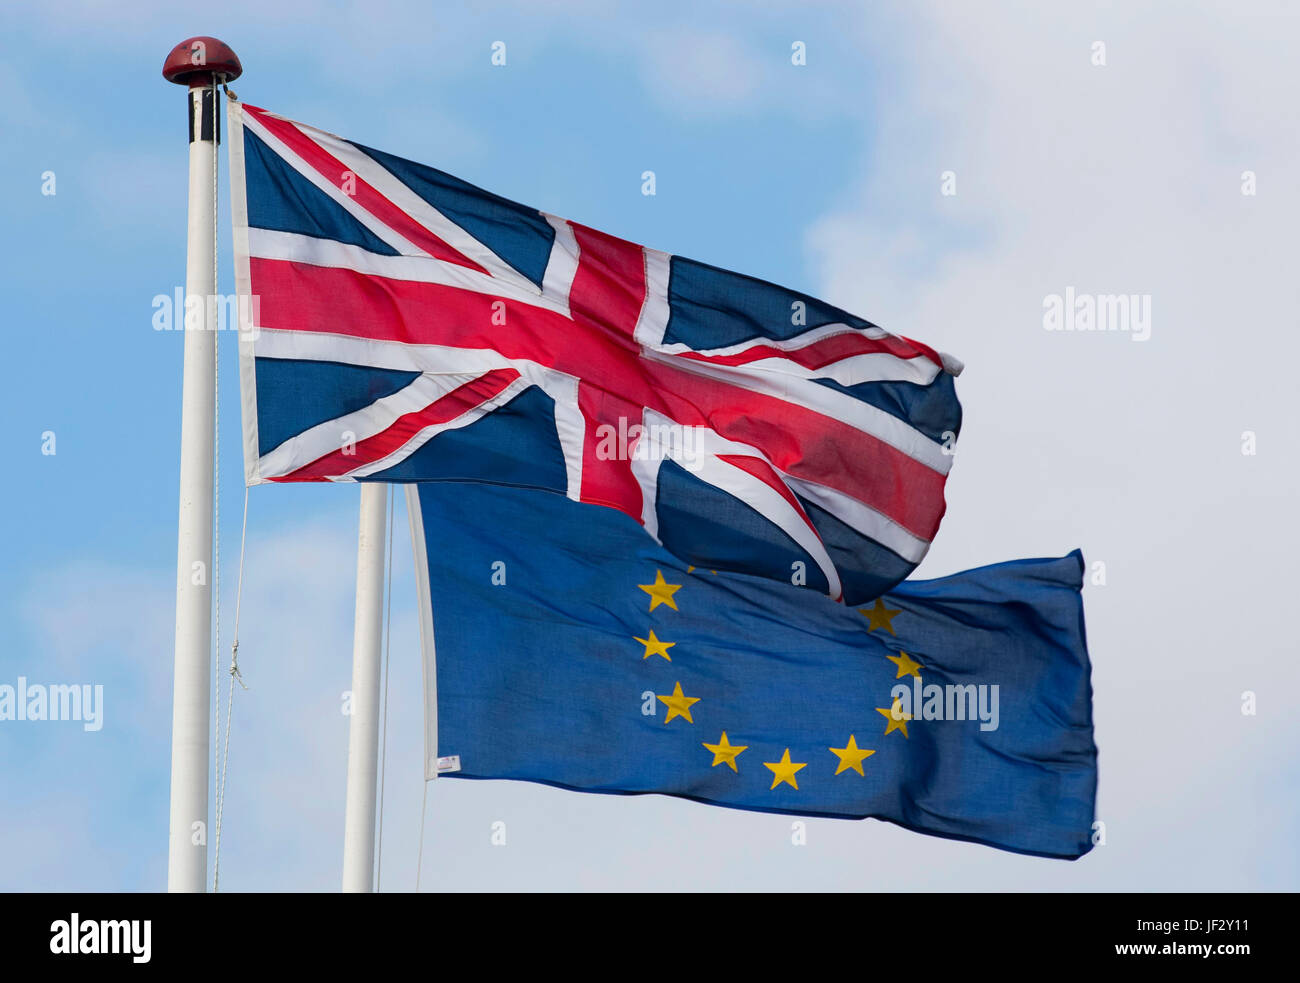 L'Union européenne et l'Union Jack britannique coup de drapeaux dans le vent. Le Royaume-Uni a voté pour quitter l'UE dans le cadre d'un référendum. Banque D'Images